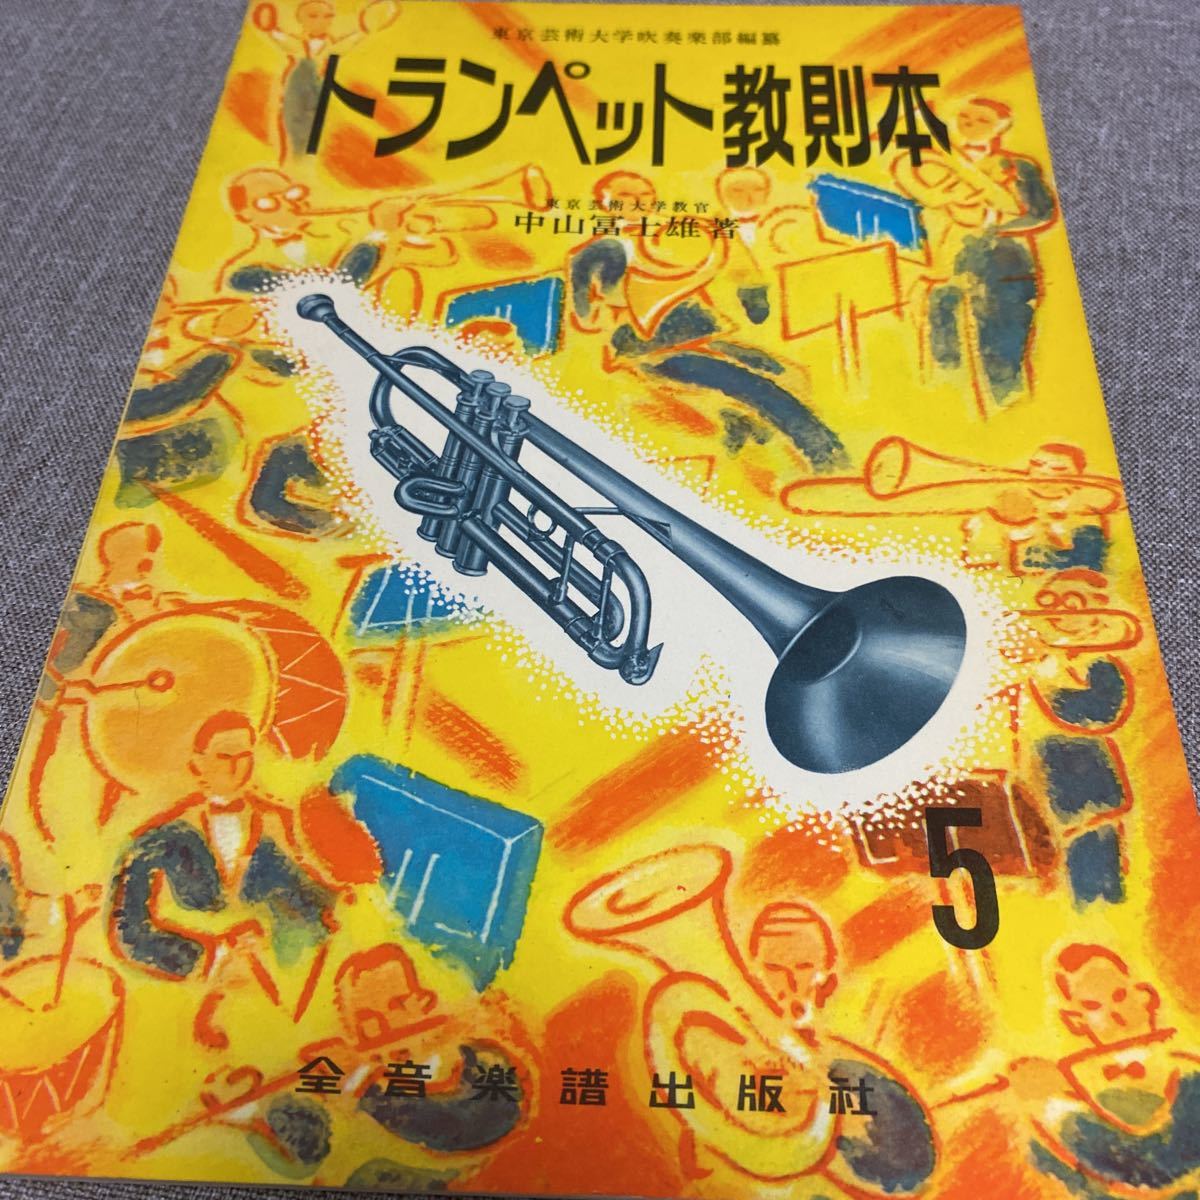  труба manual / Nakayama Fuji самец /